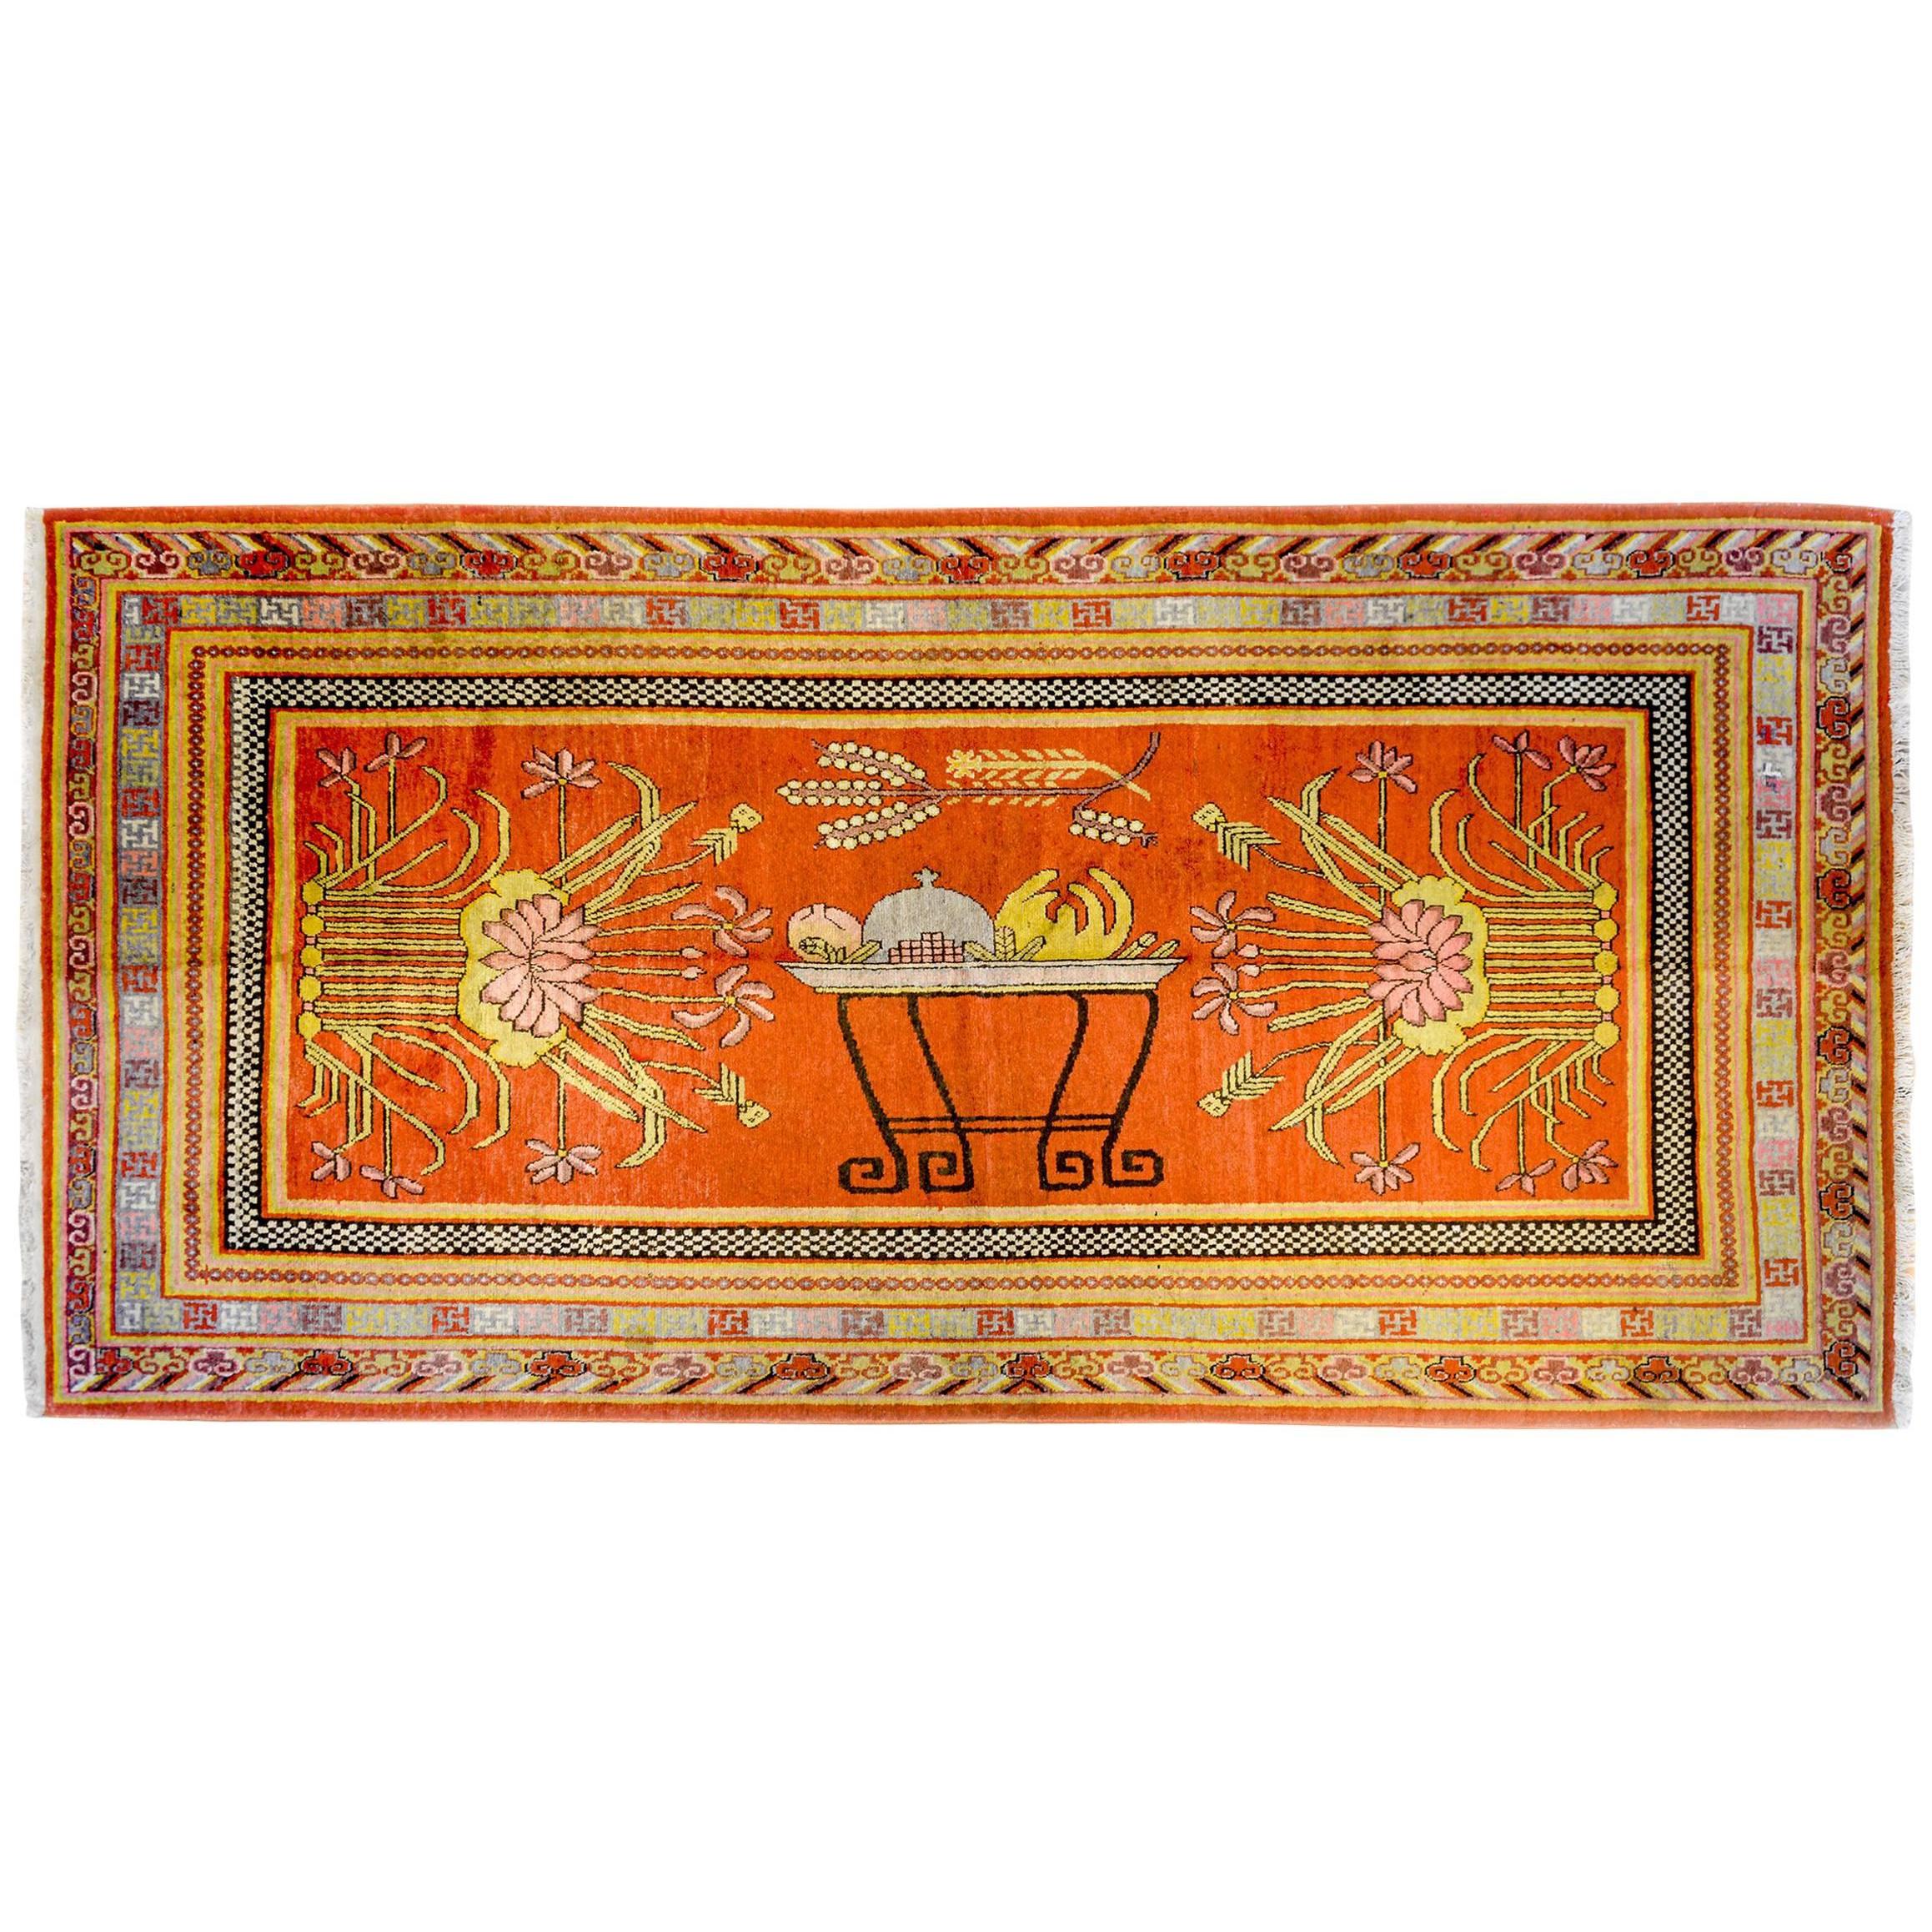 Unglaublicher Teppich aus dem frühen 20. Jahrhundert aus Khotan